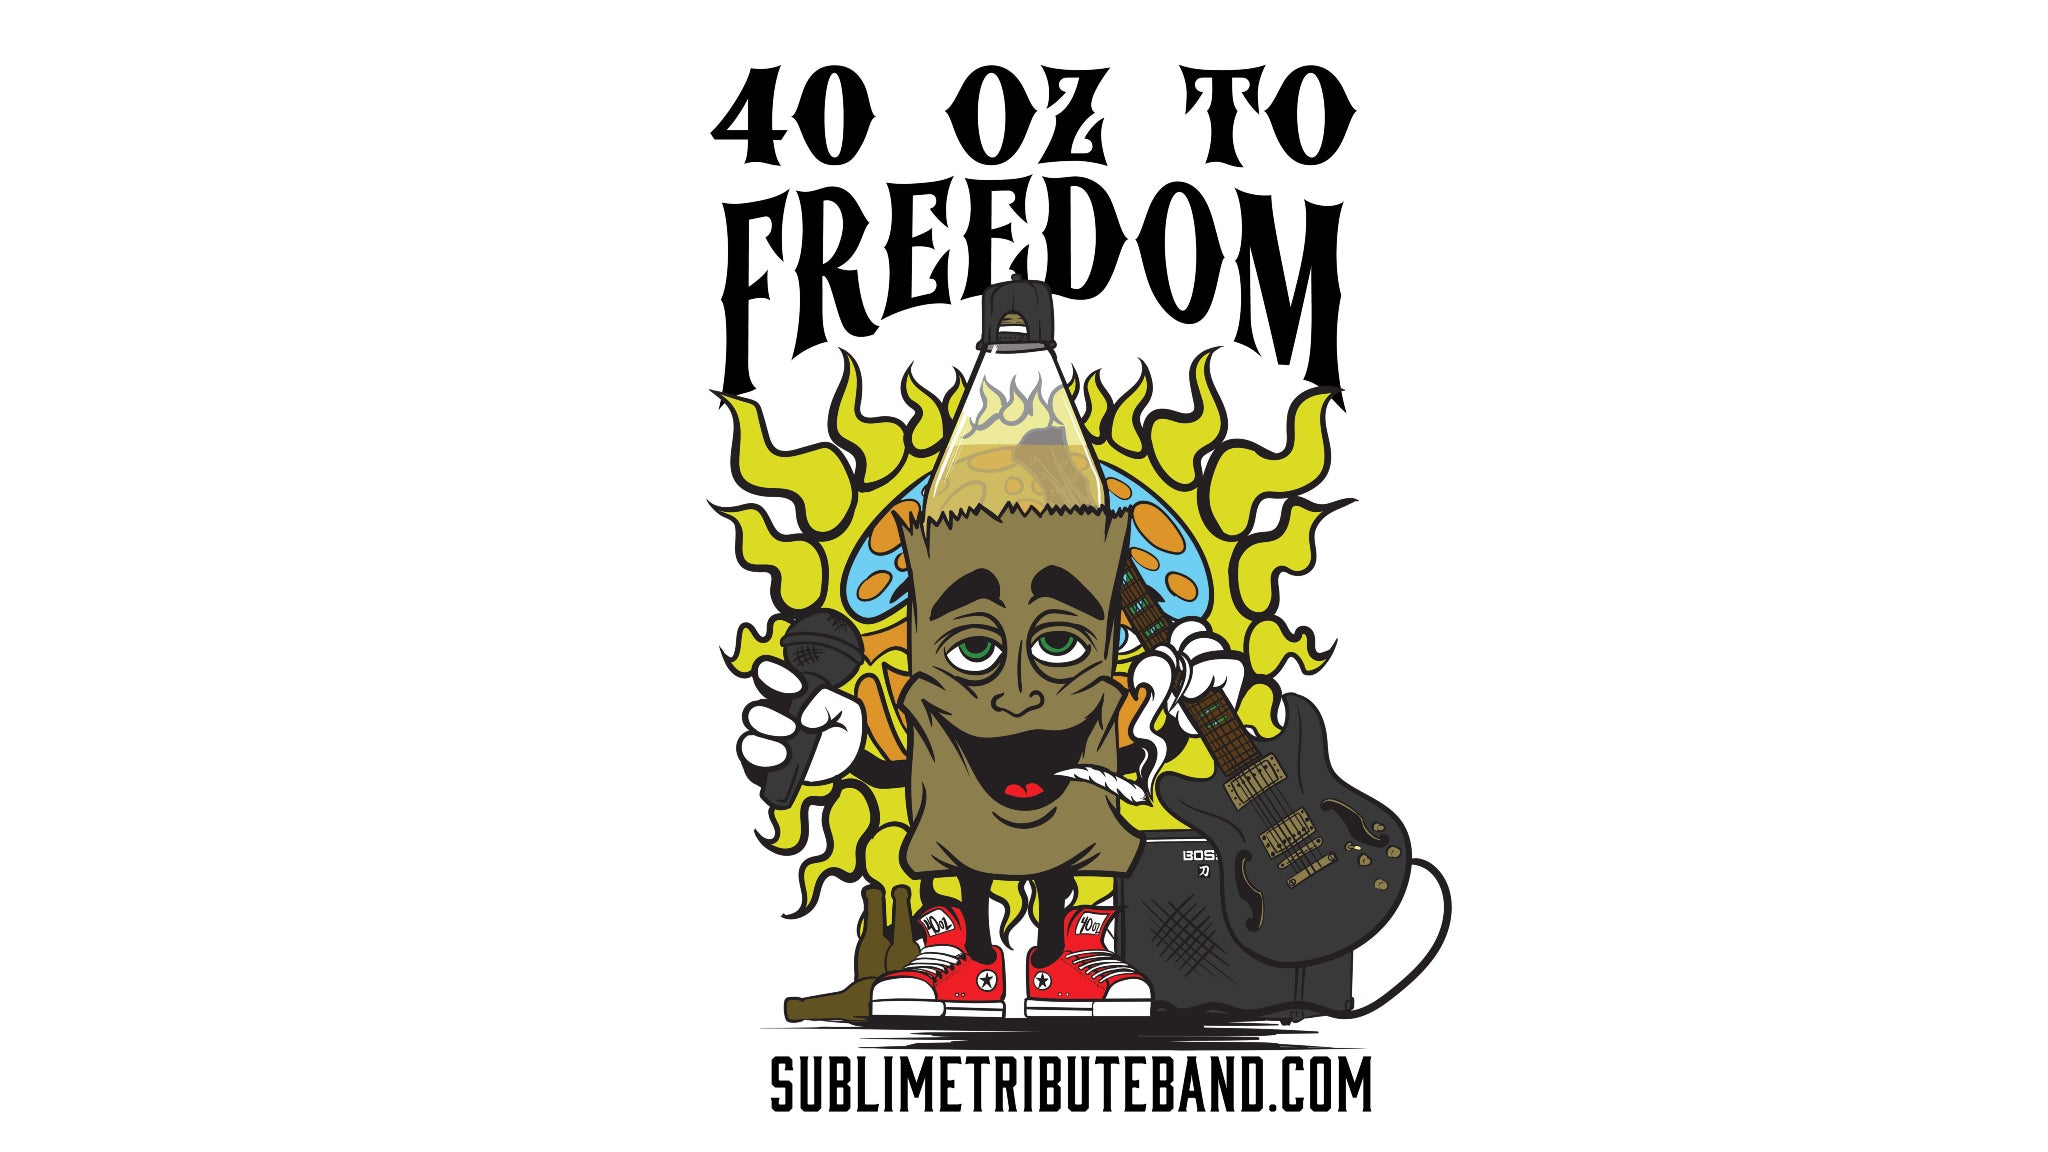 40 Oz To Freedom (Sublime Tribute) w/ Daryl Crow (Sheryl Crow Tribute)